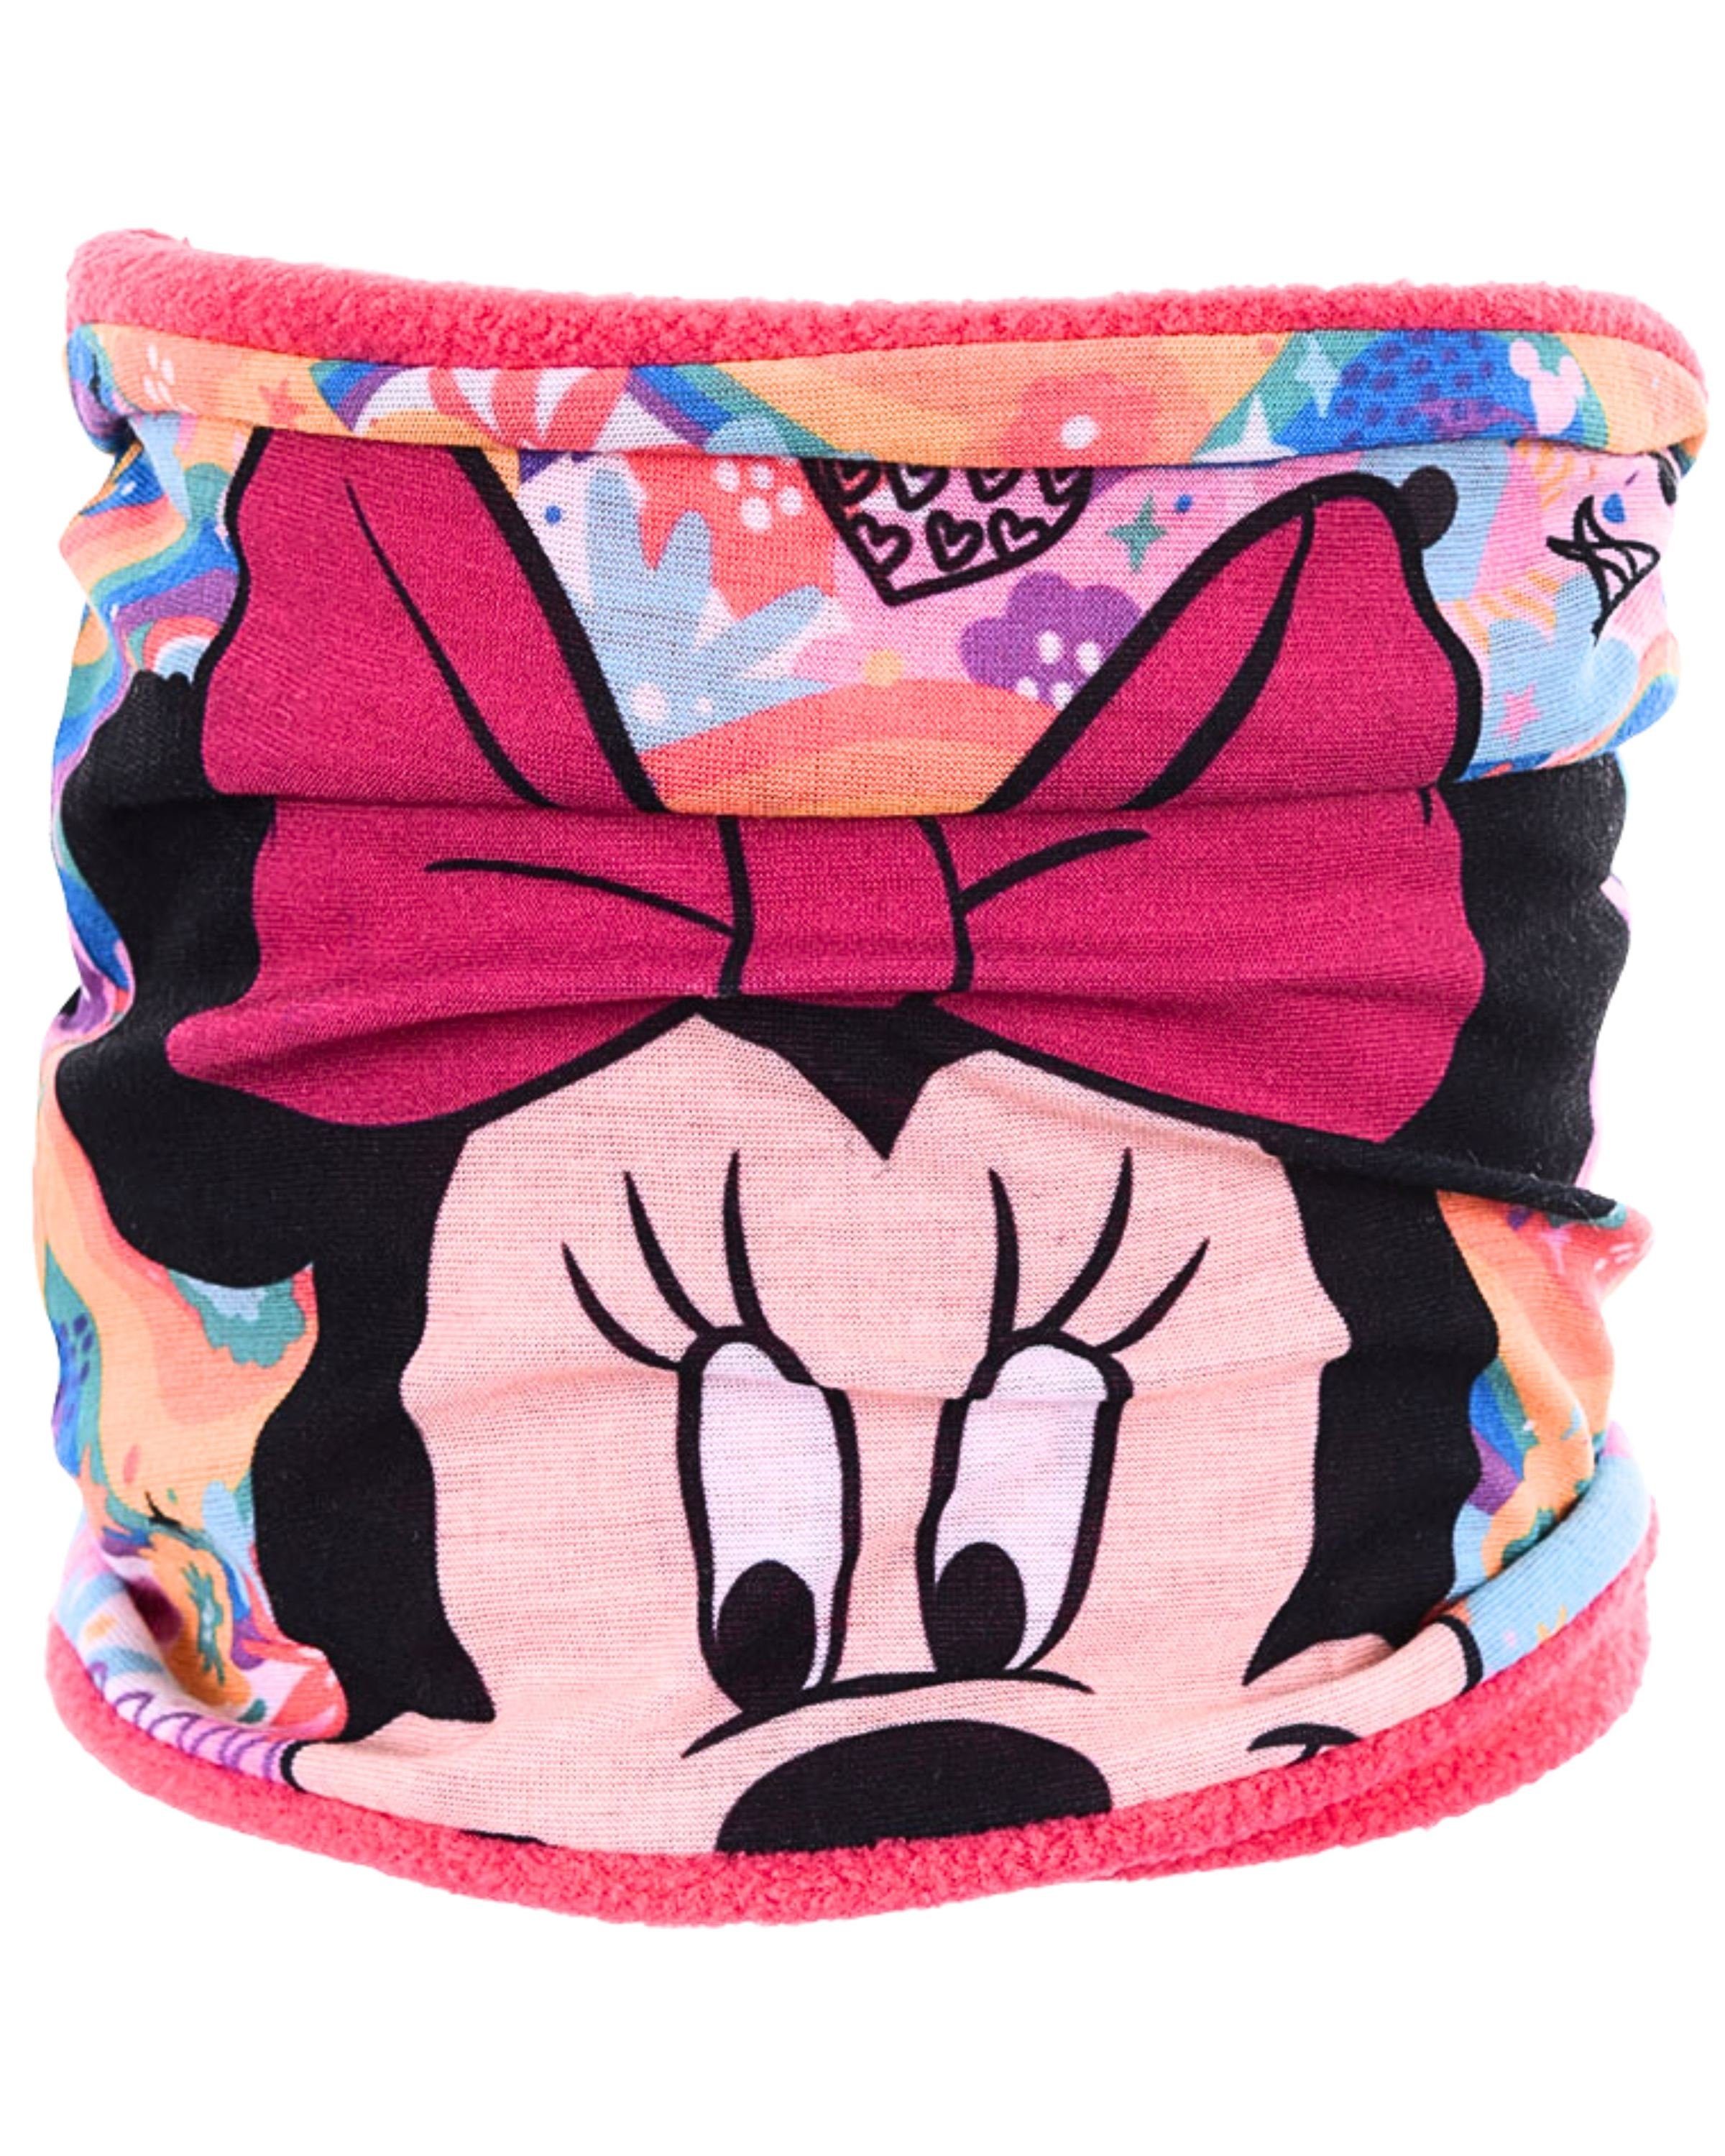 Disney Minnie Mouse Loop Minnie Maus, Kinder Schlauchschal mit Fleece Futter warm & leicht